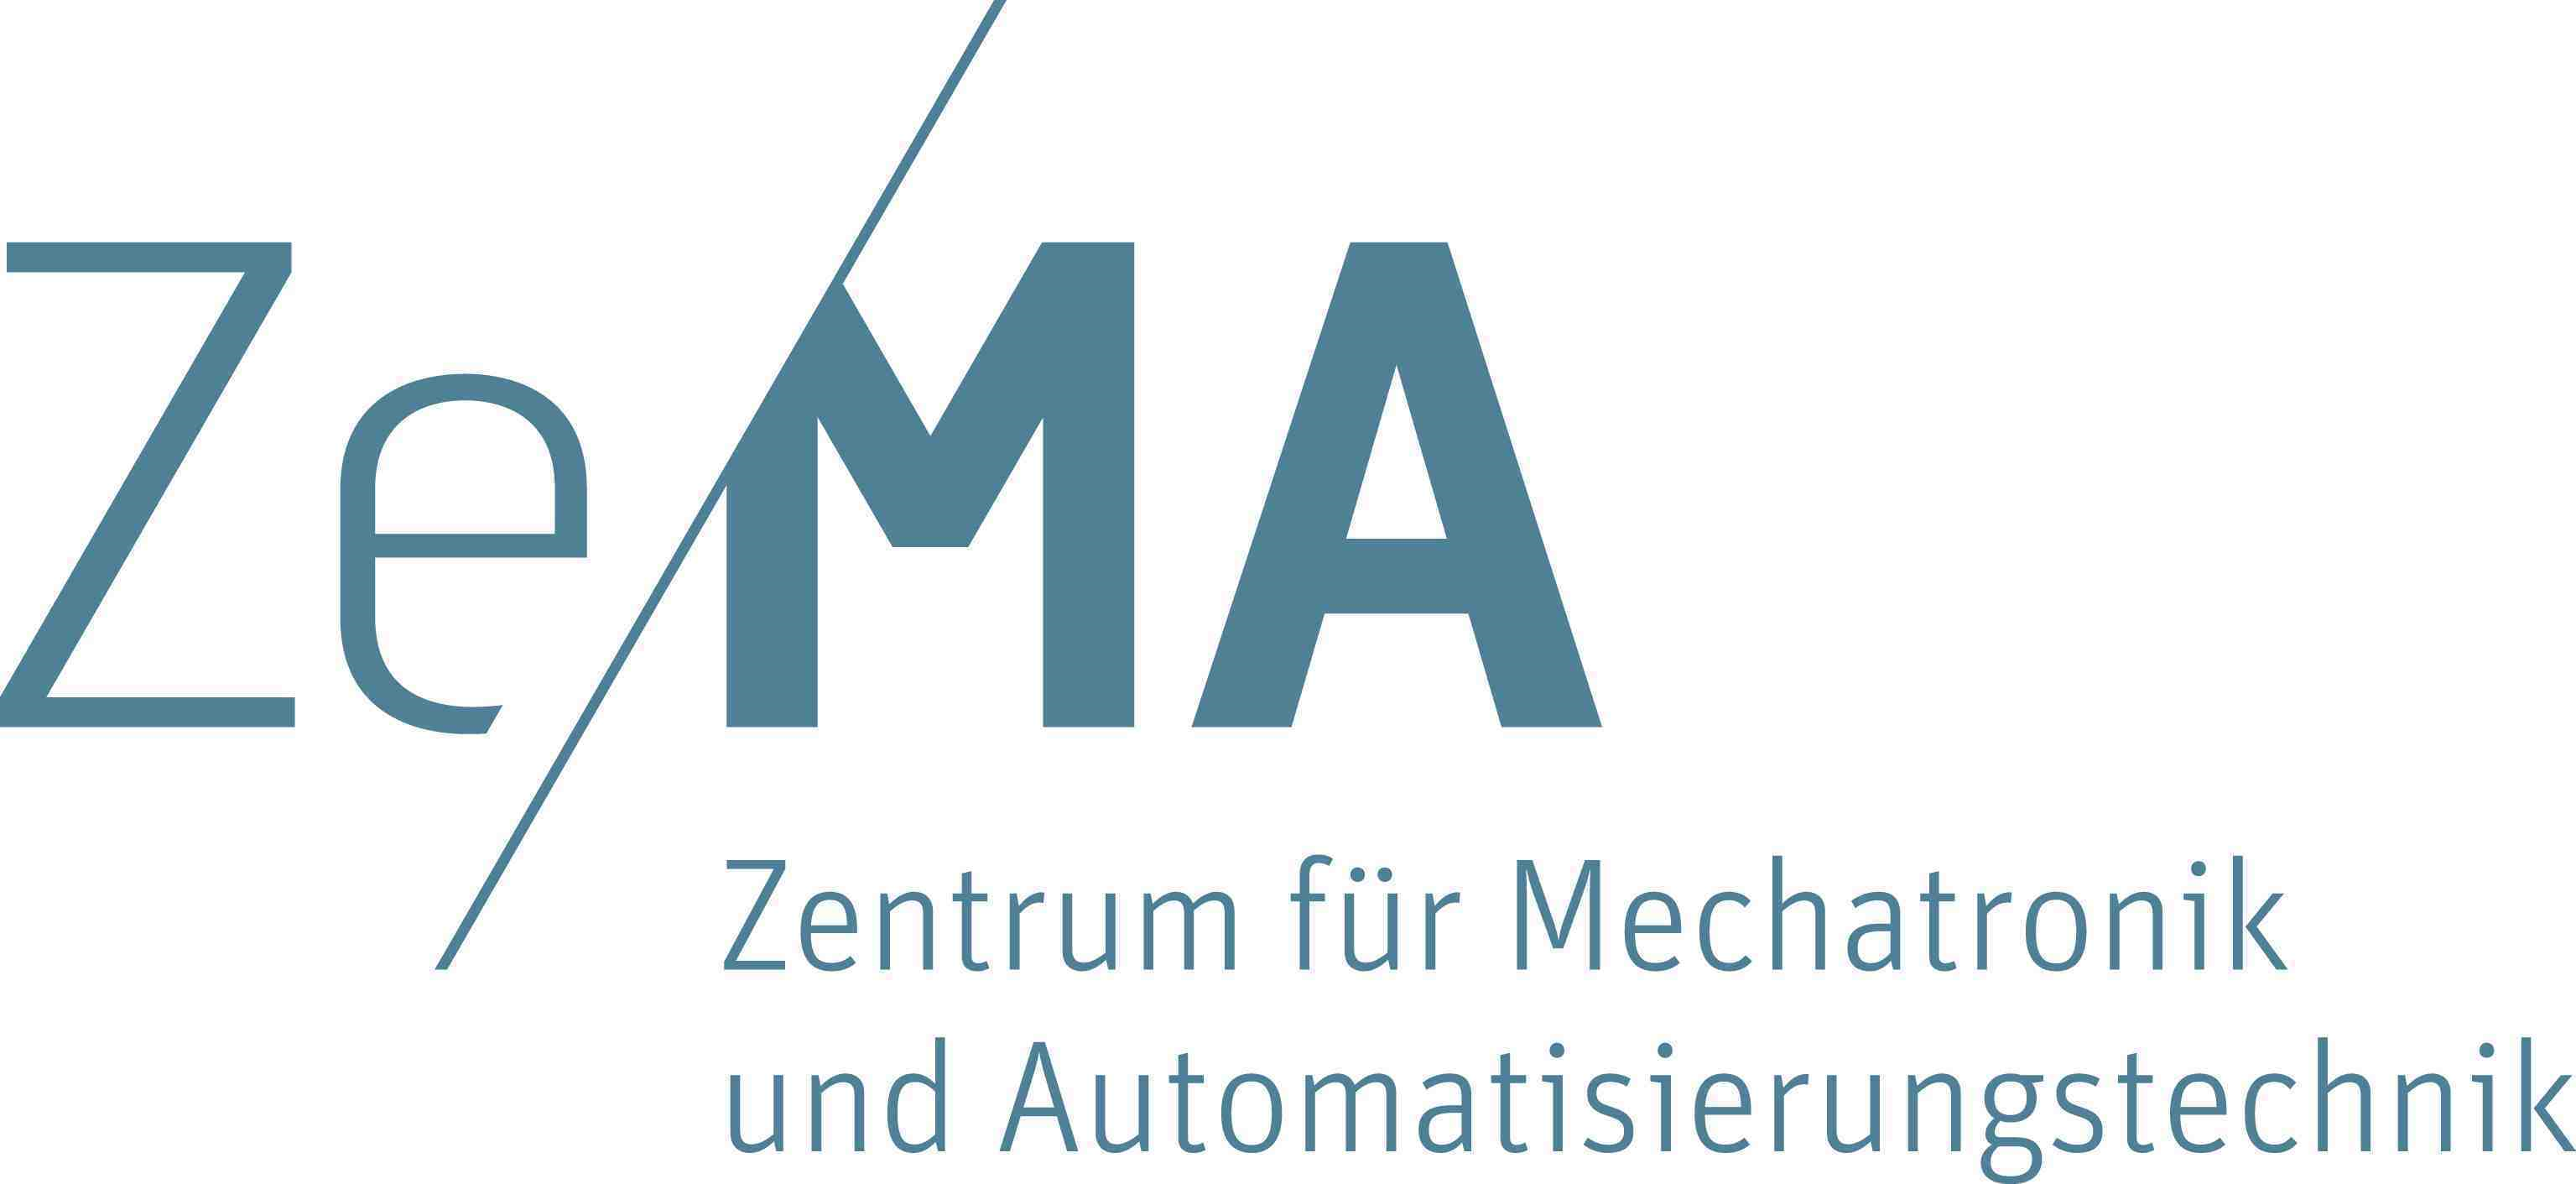 Logo ZeMA